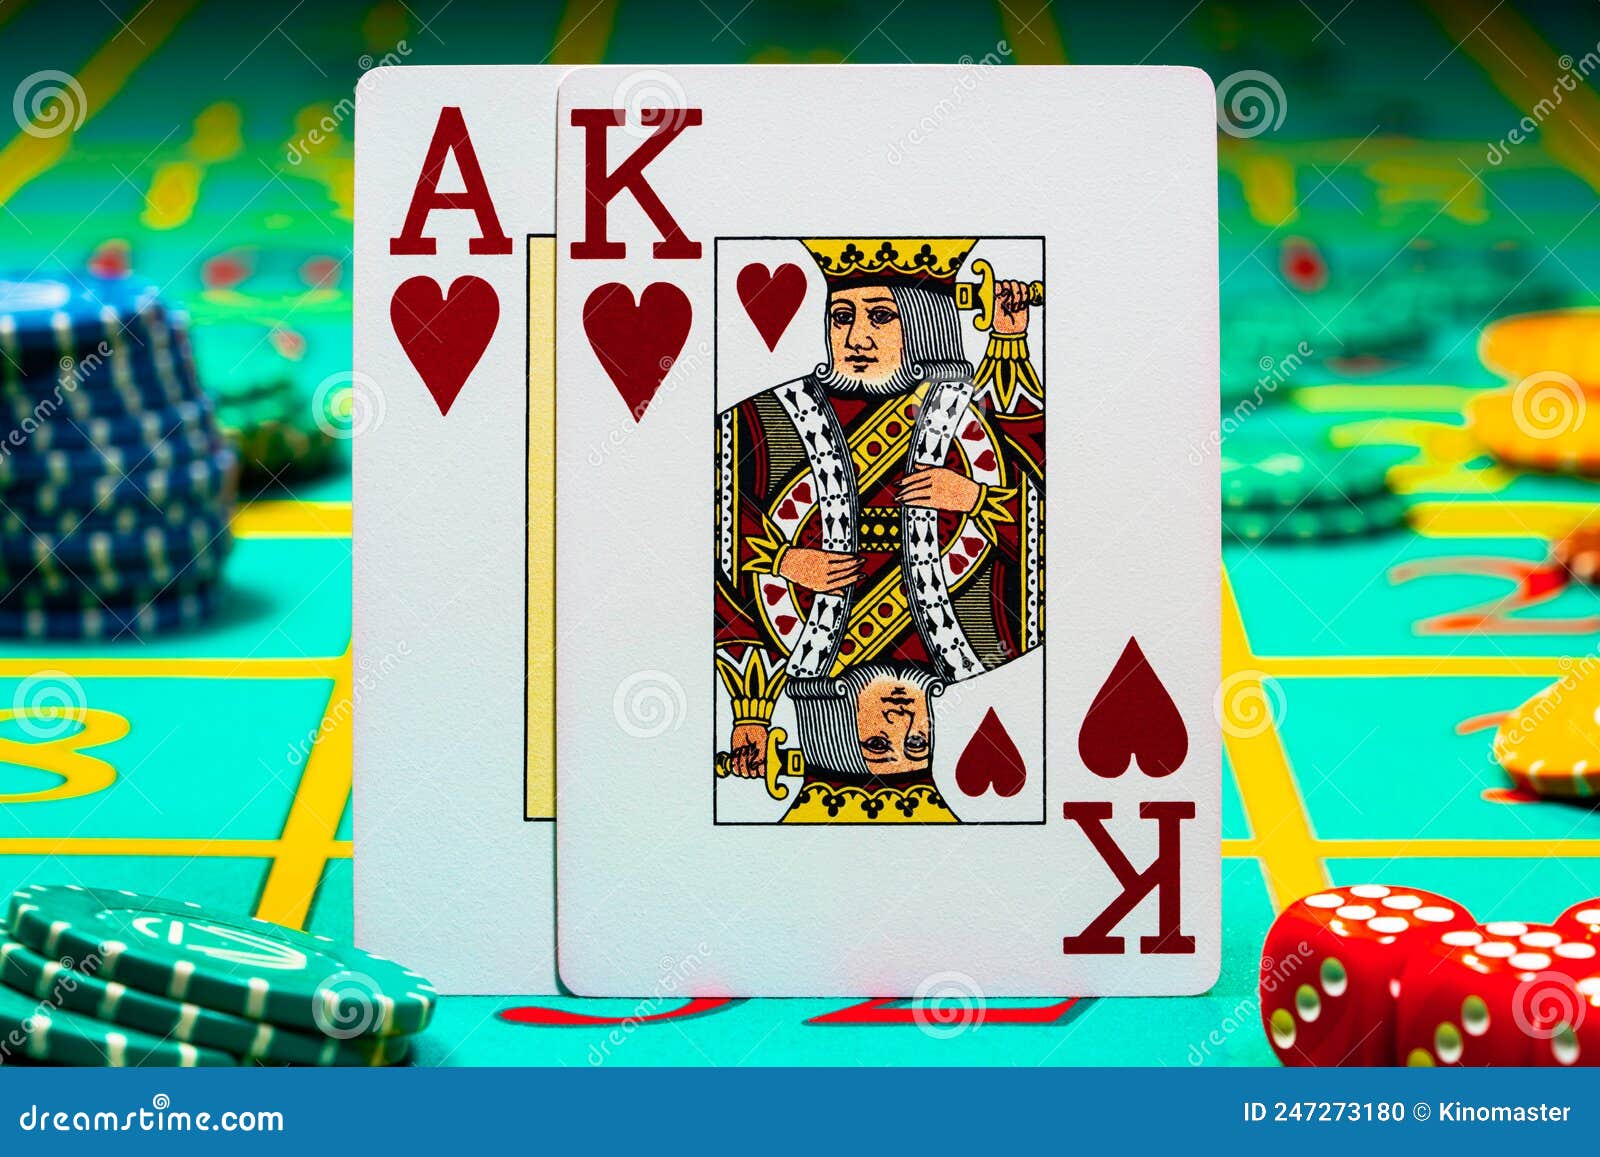 Jogos de casino e cartas 